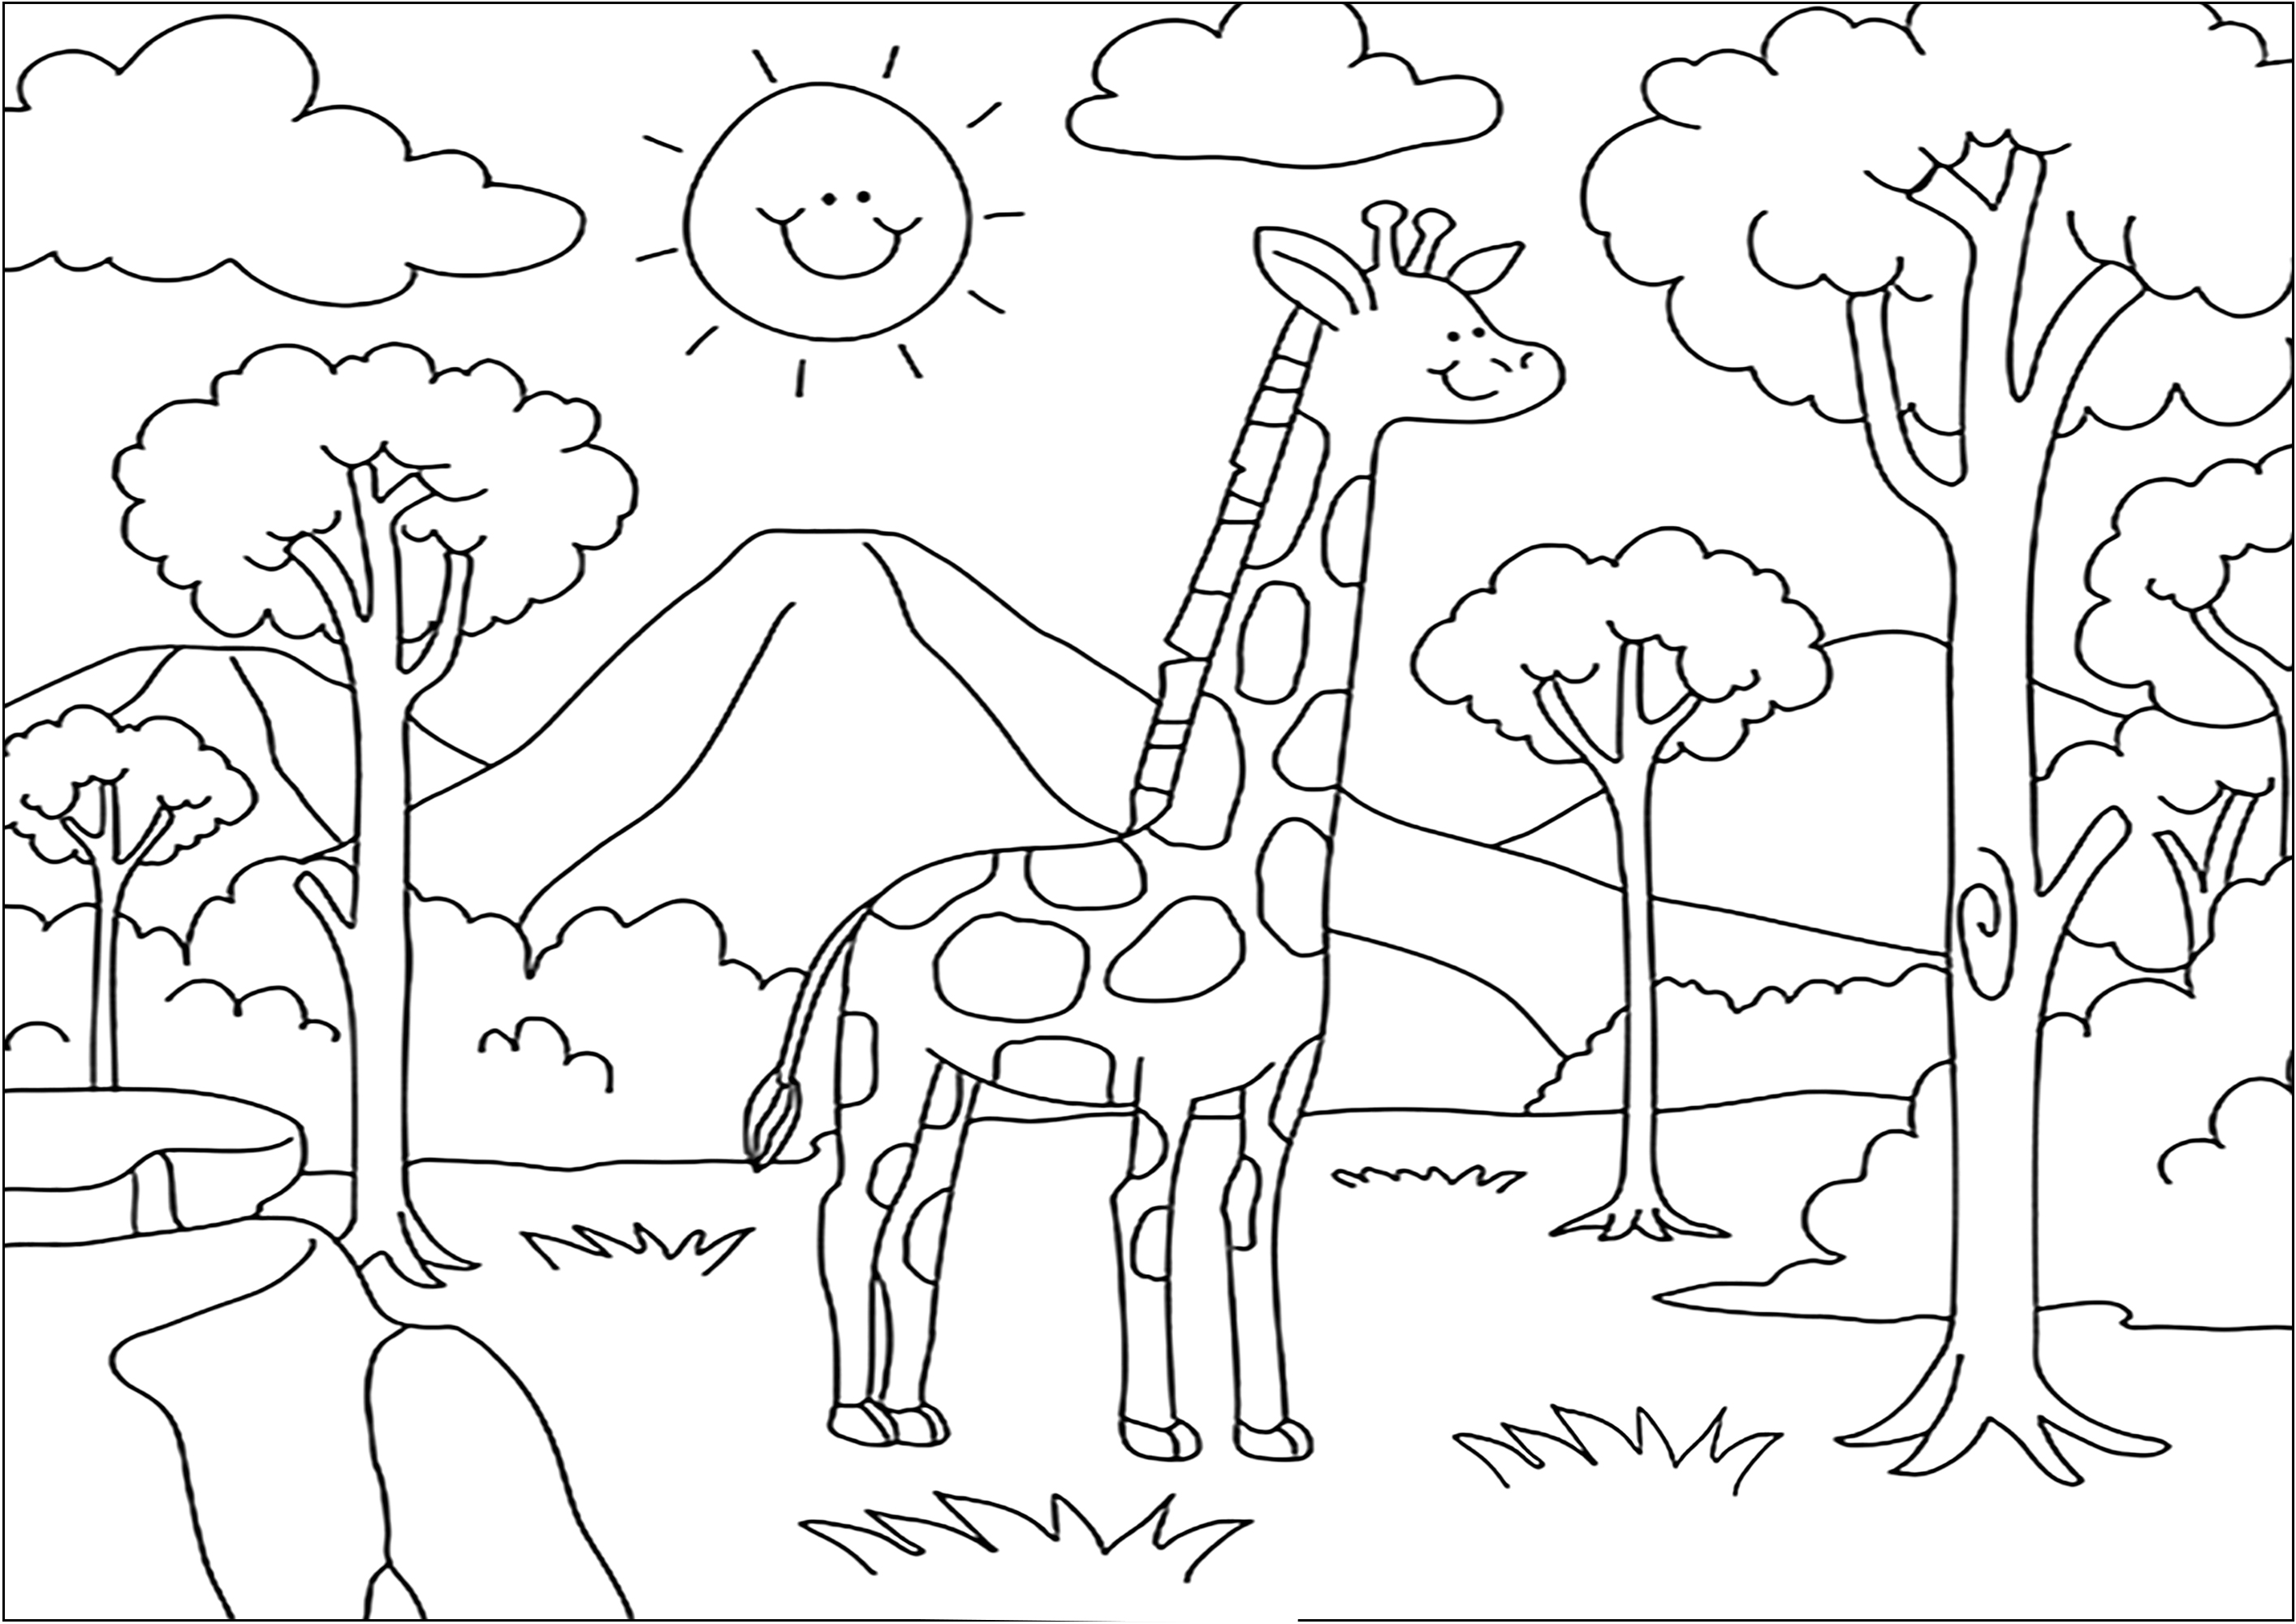 Girafa na savana. Colorir esta bonita paisagem com o majestoso vulcão como pano de fundo